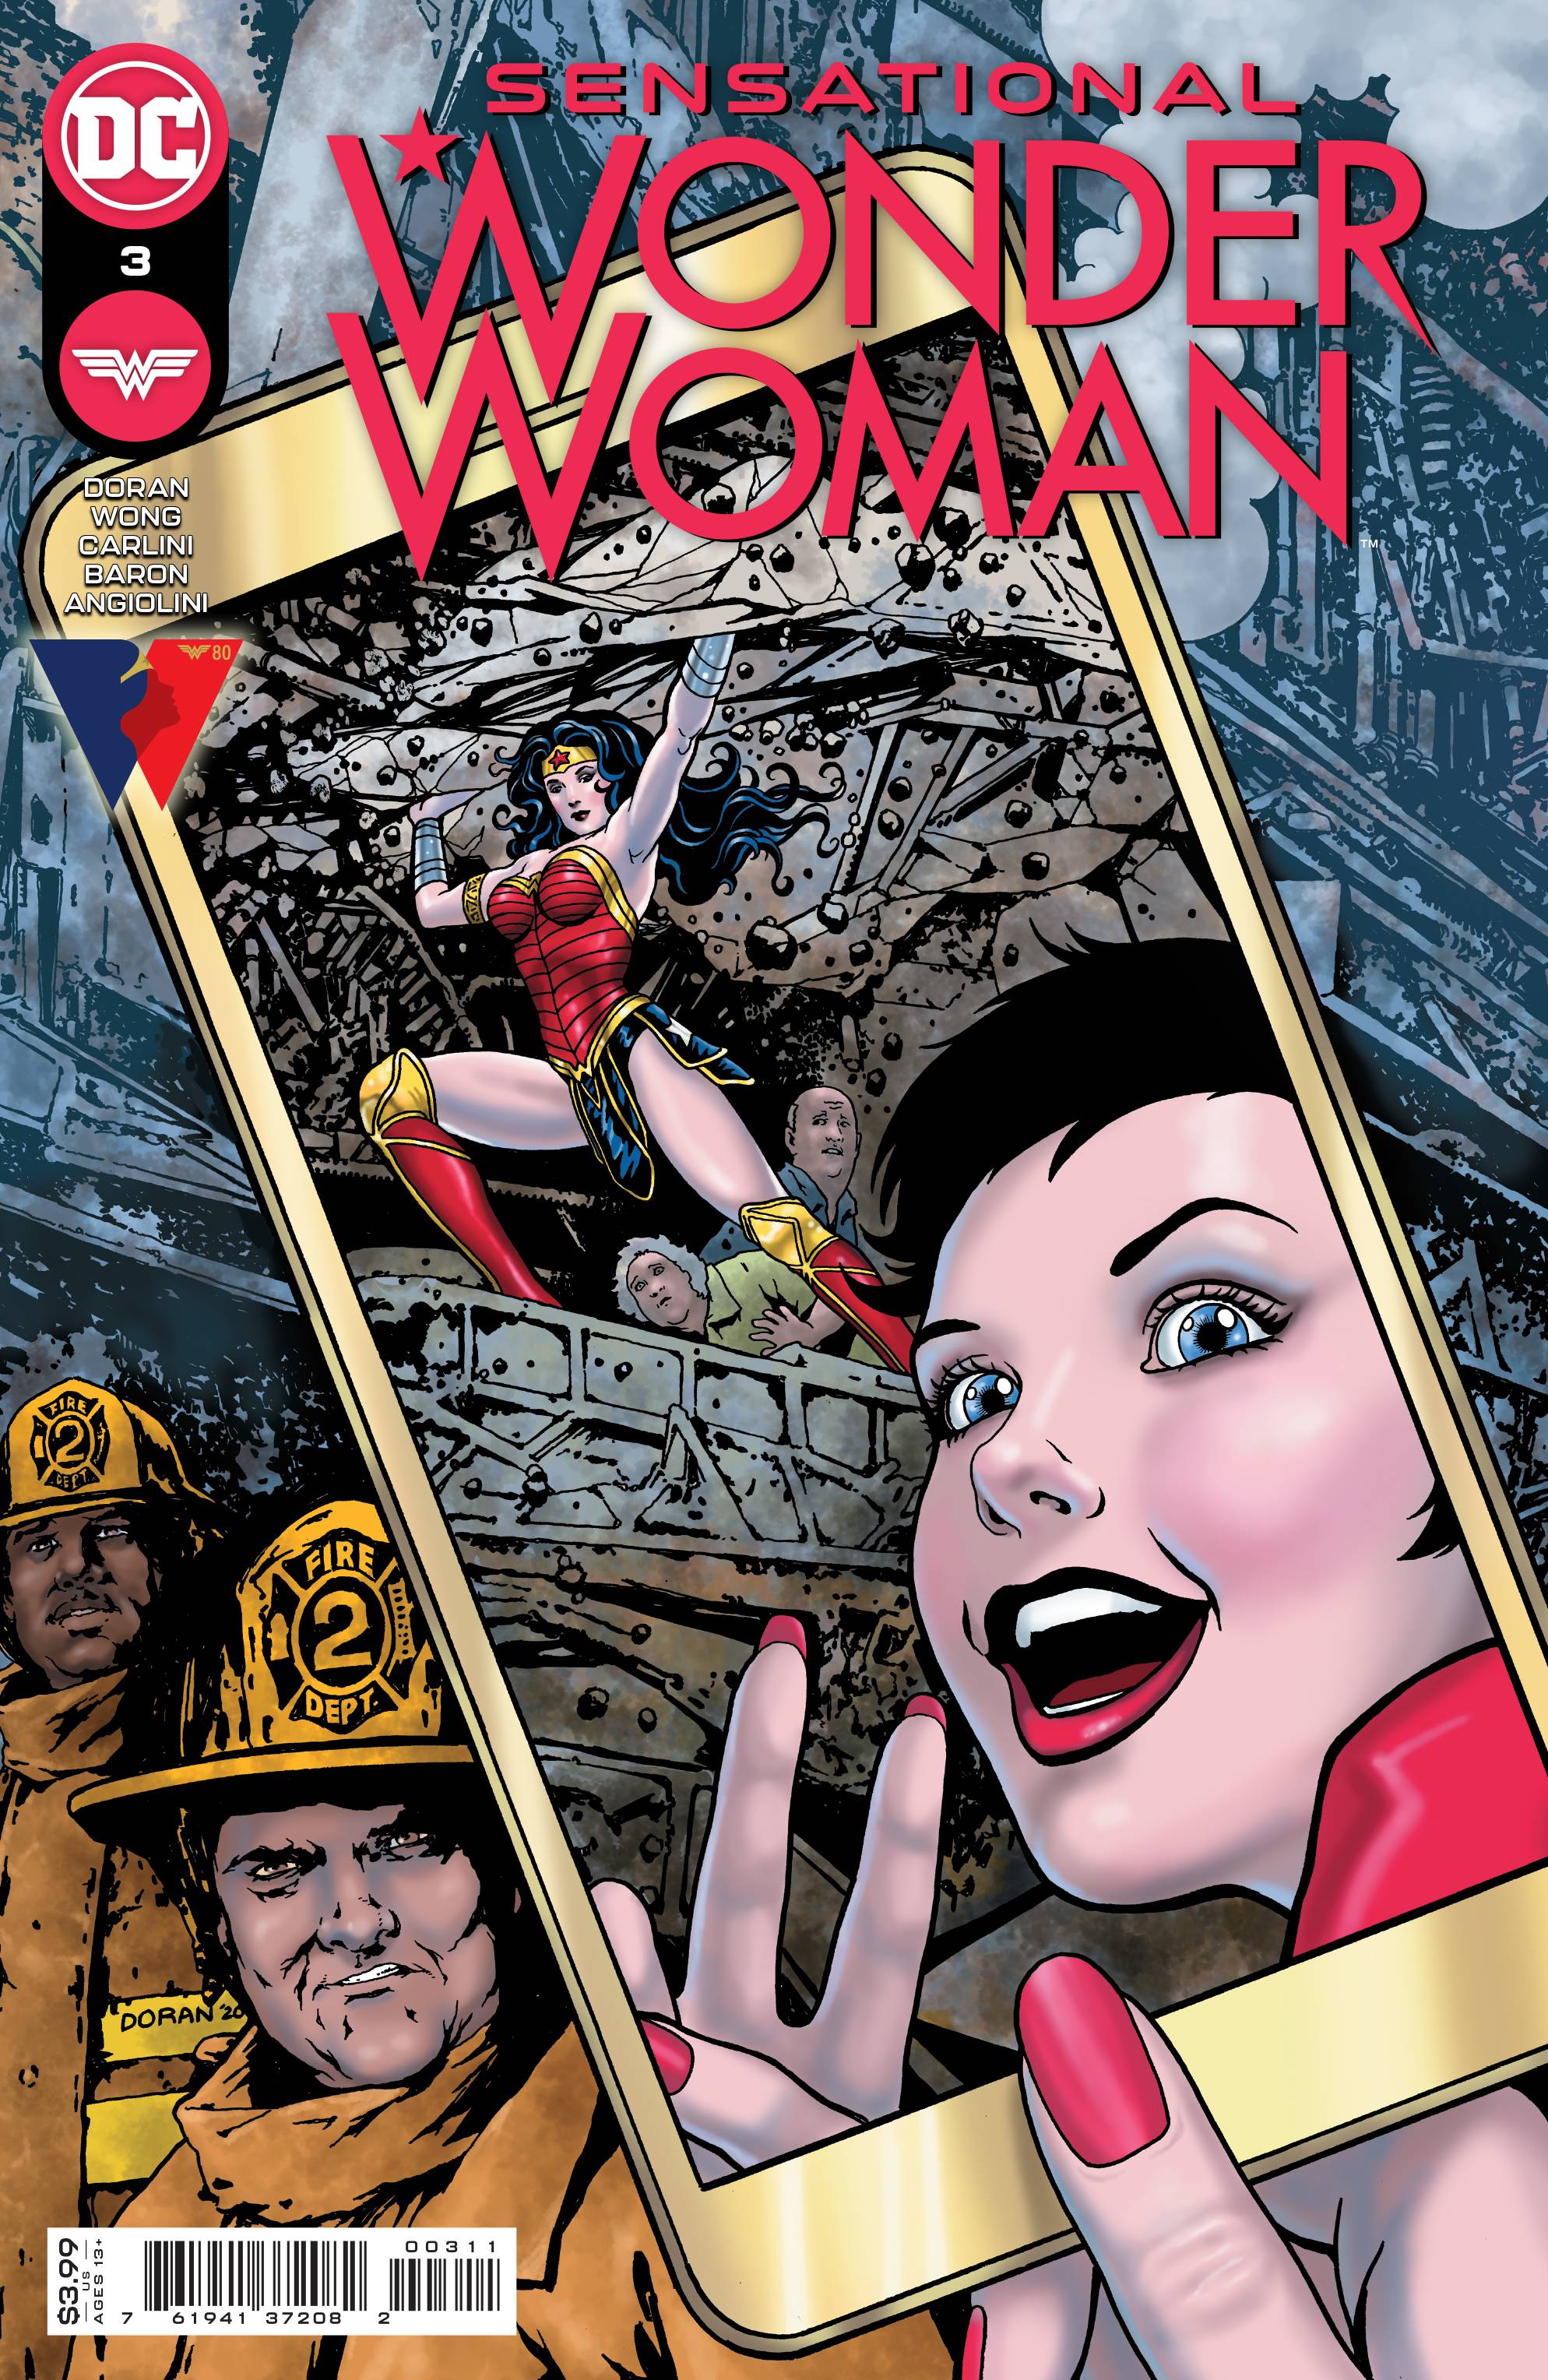 SENSATIONAL WONDER WOMAN #3 CVR A DORAN | L.A. Mood Comics and Games